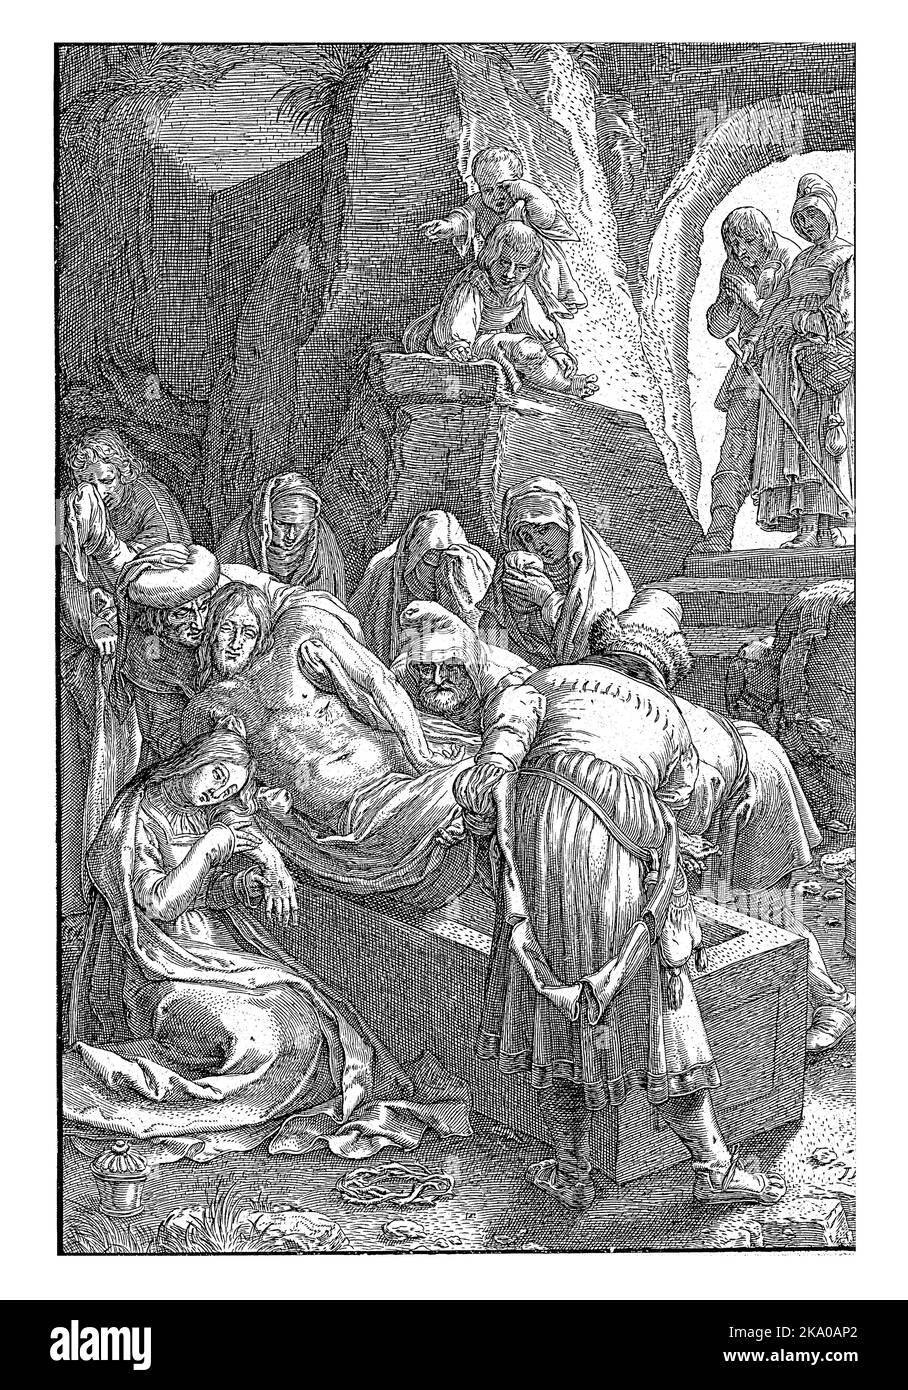 Christus wird von einer Reihe von Männern in ein Grab in einer Höhle gelegt. Die Marien und der Apostel Johannes stehen weinend da. Stockfoto